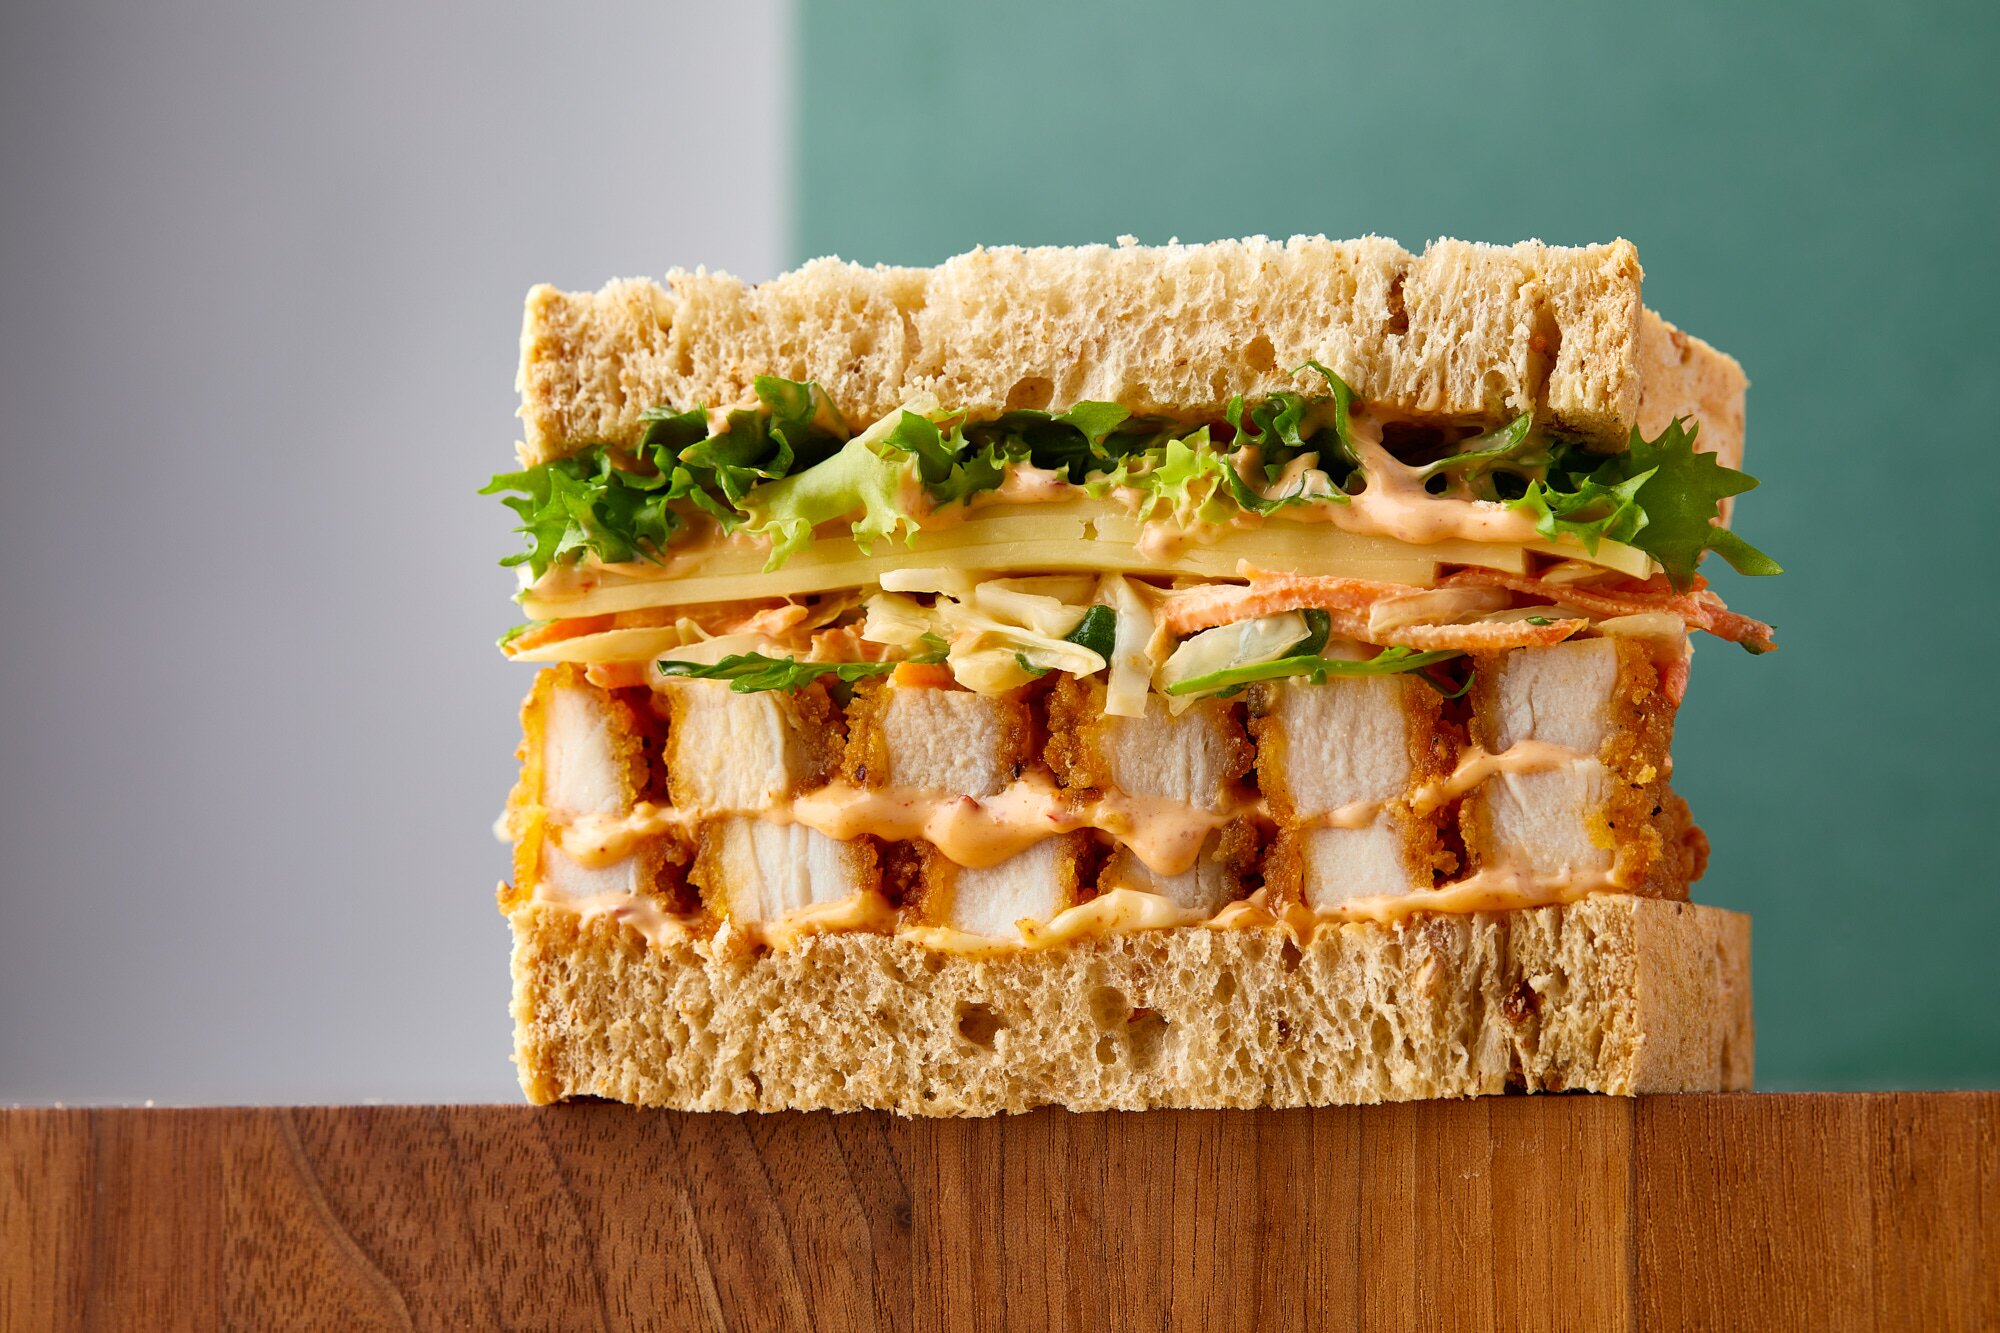 Bristol's Sandwich Sandwich to make London debut